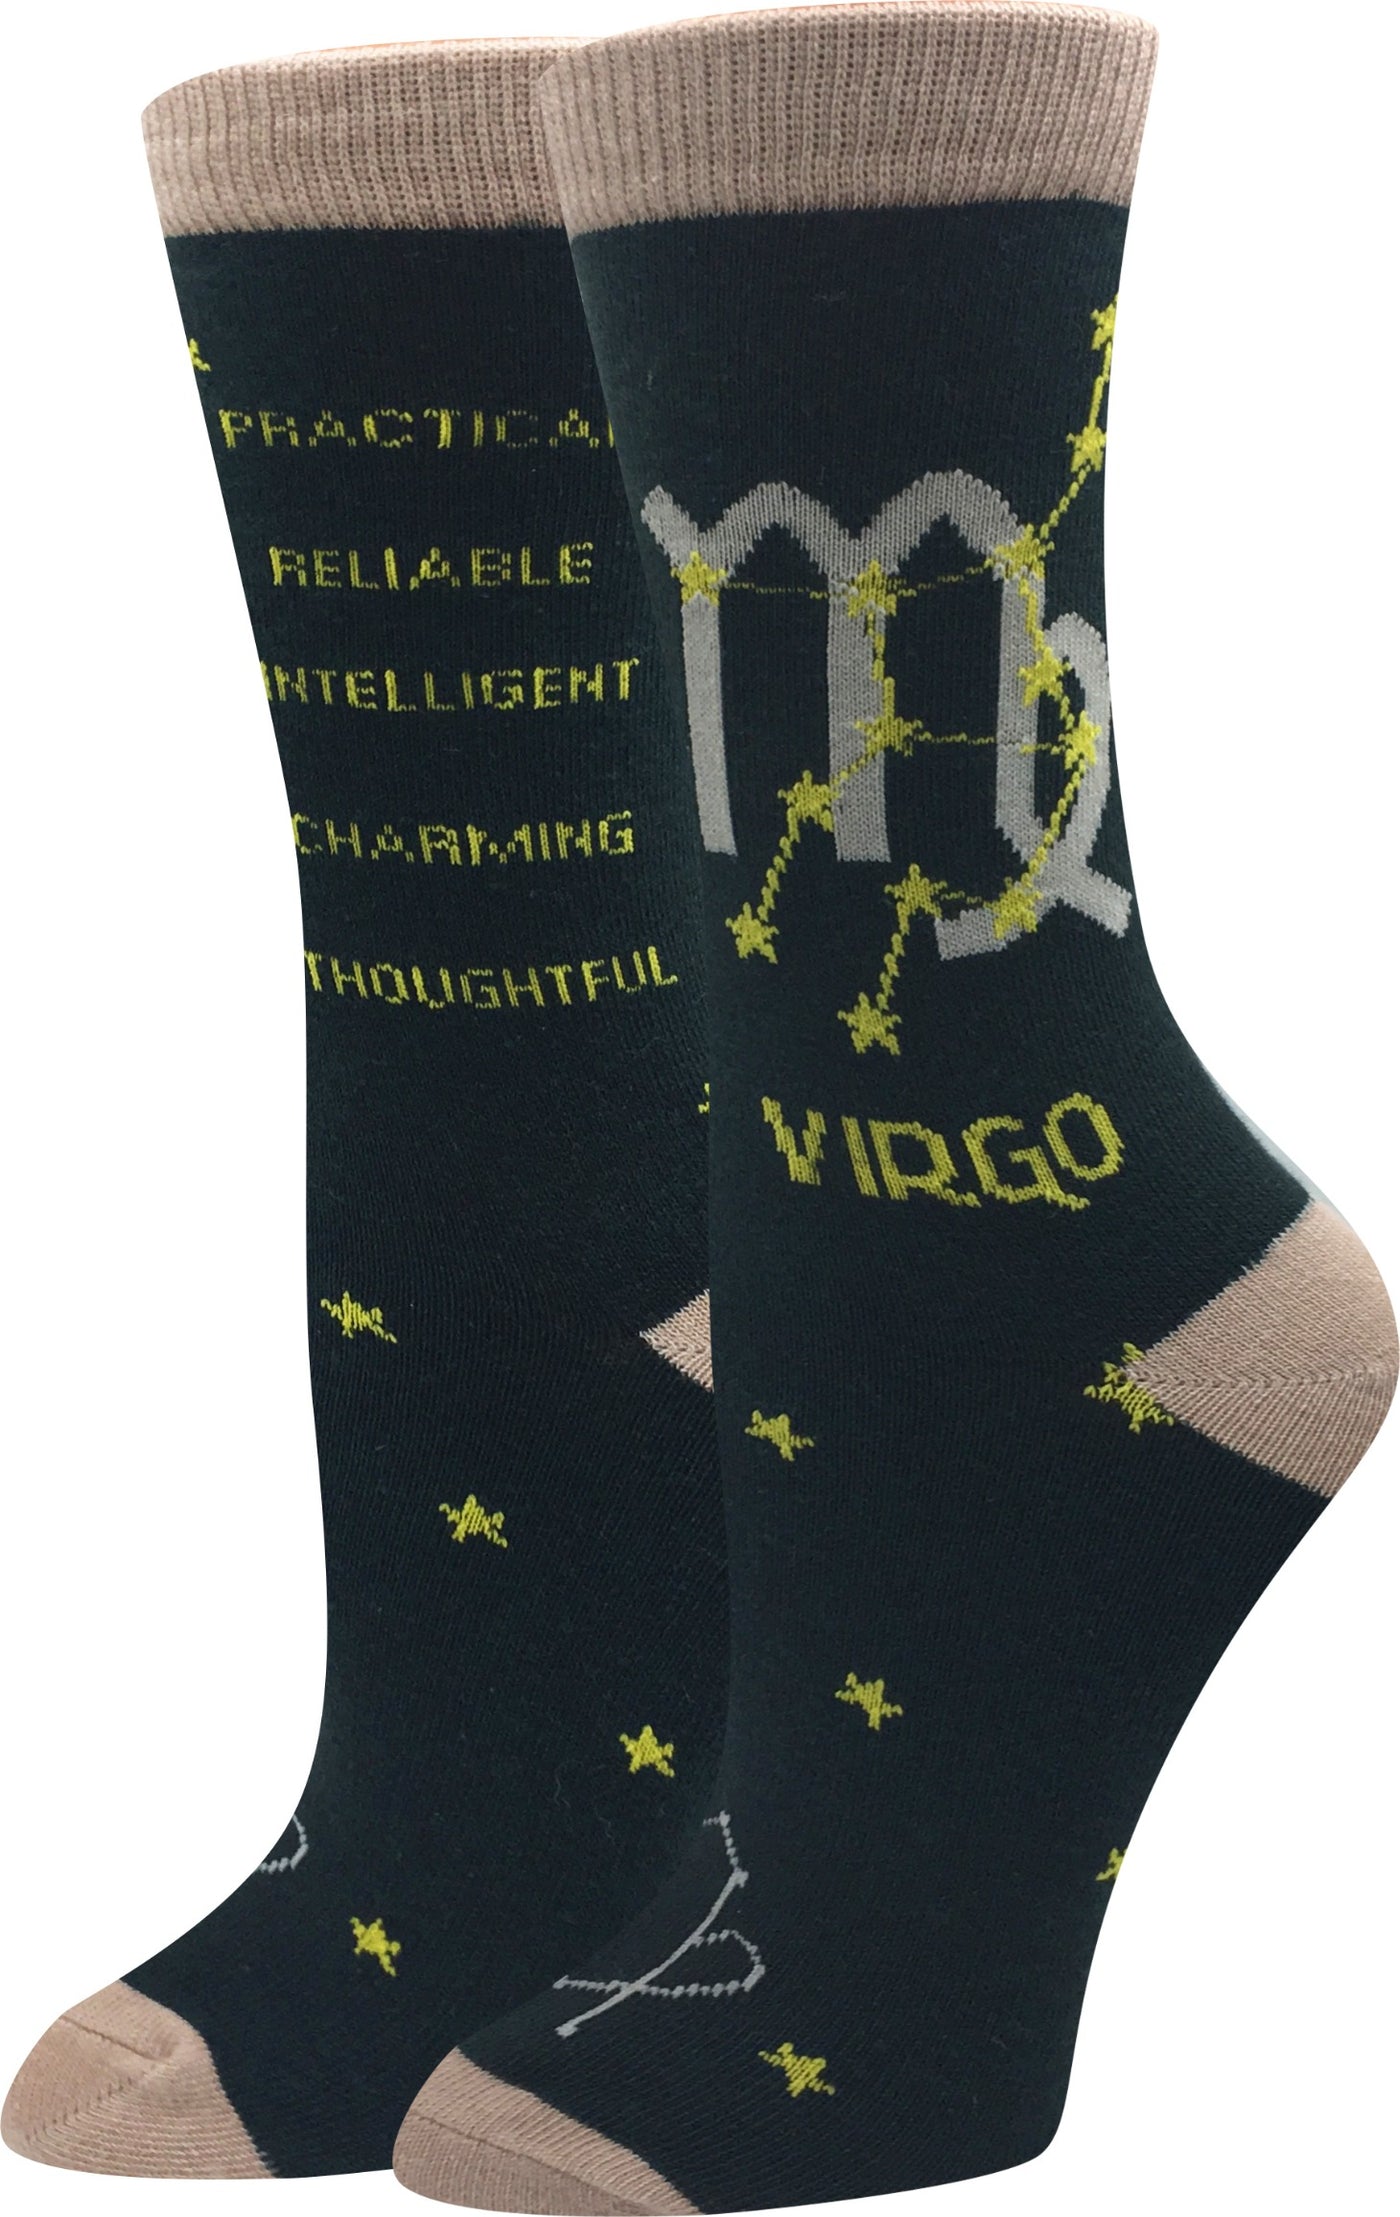 Virgo Socks